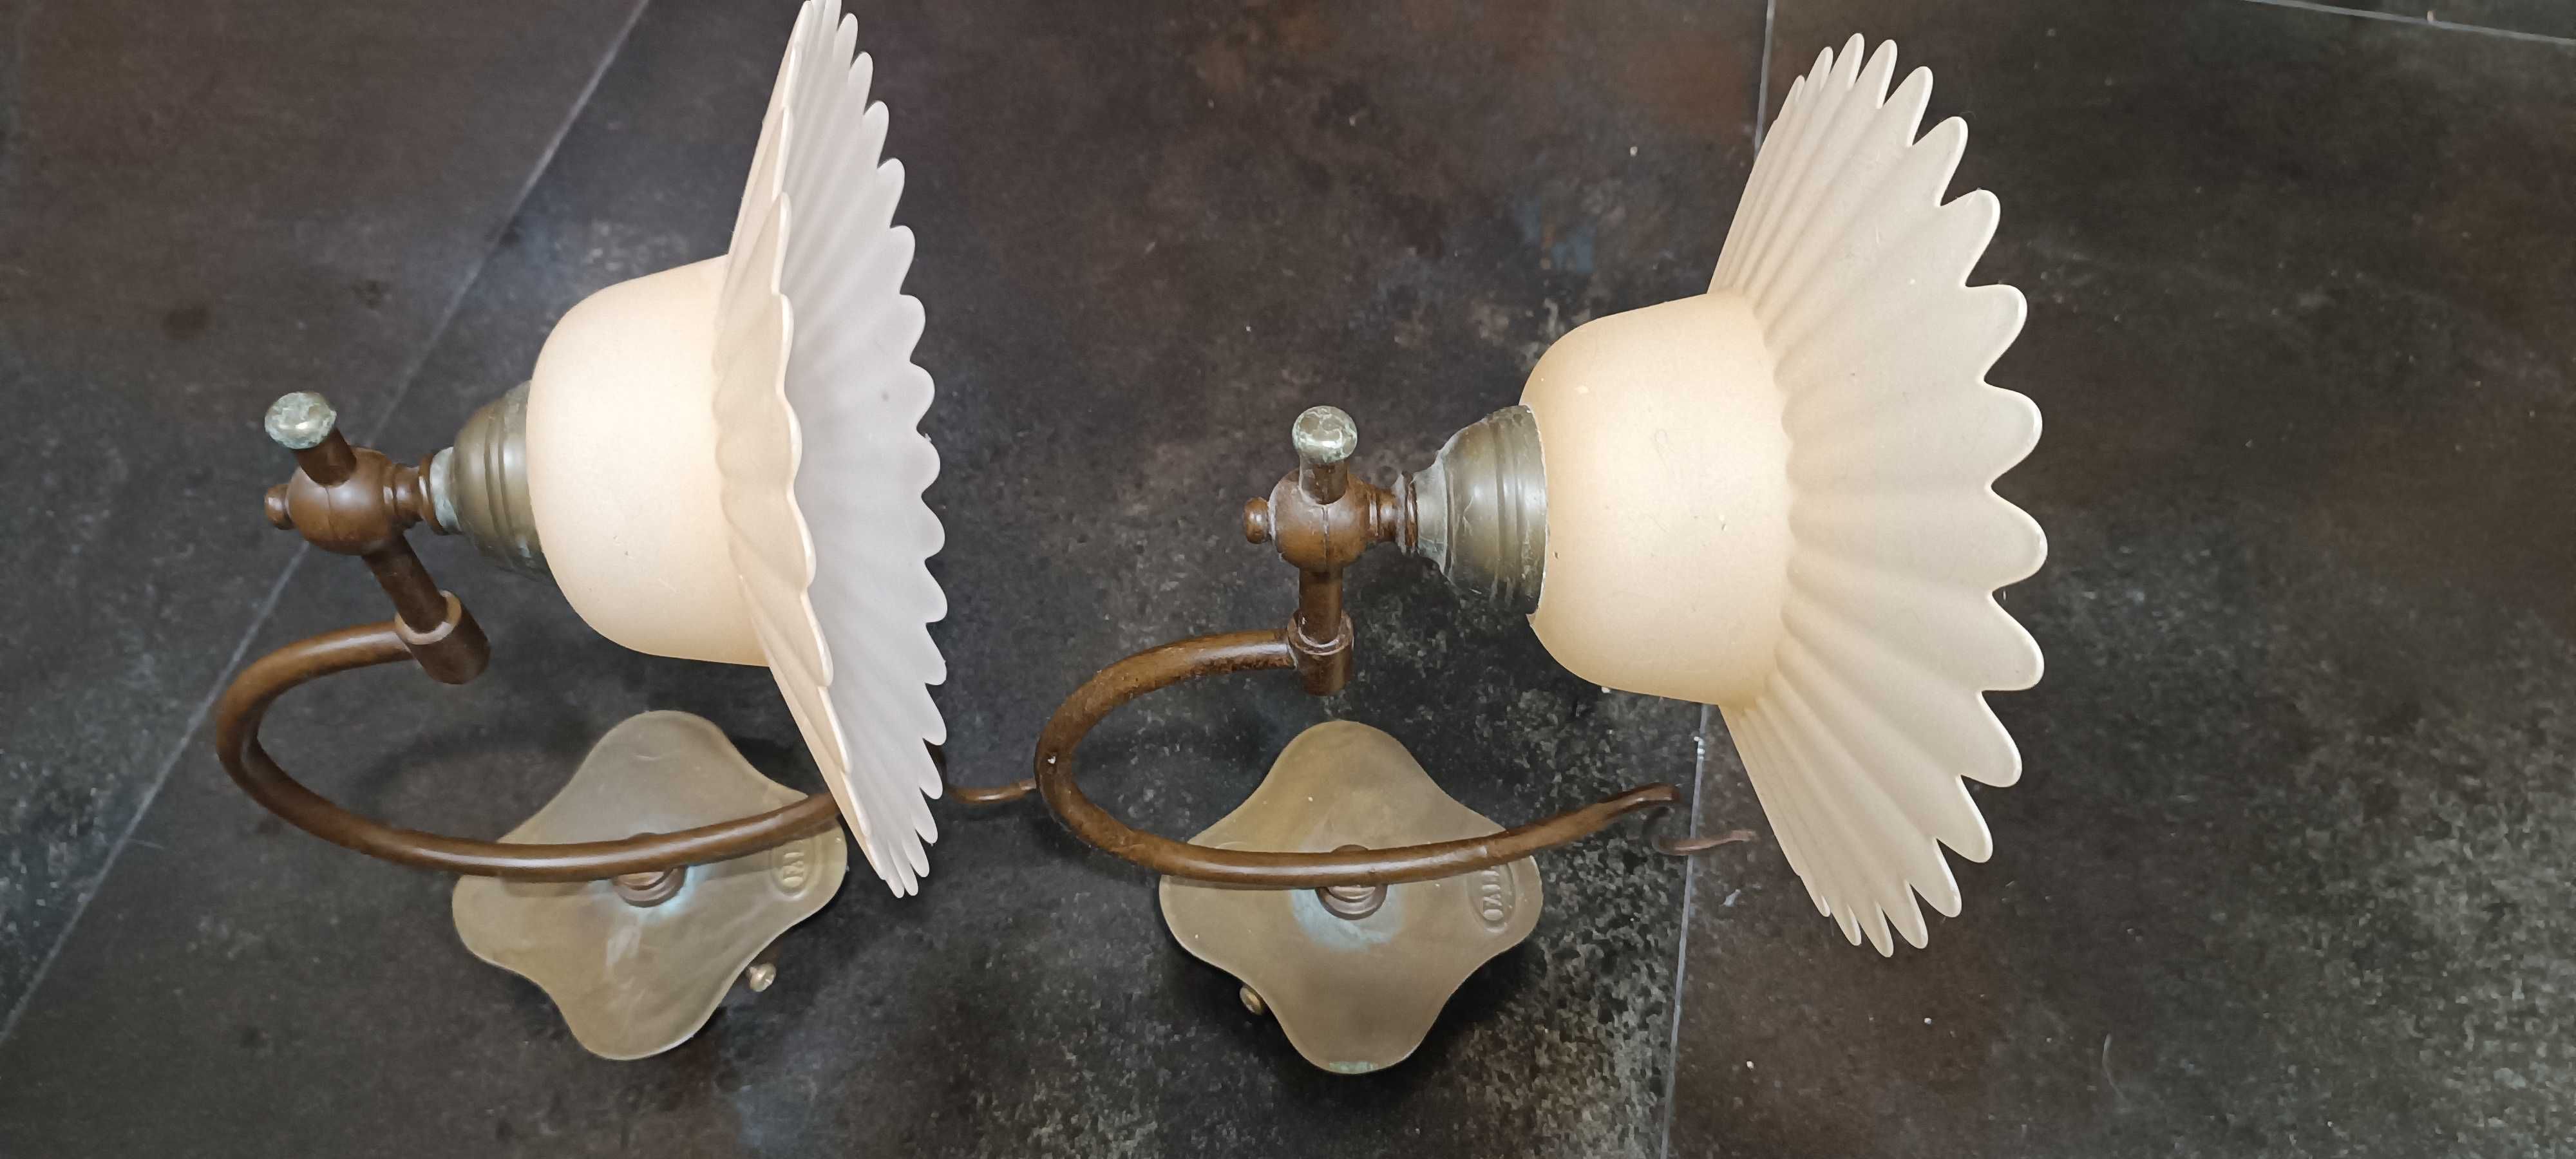 Sprzedam komplet pięknych lamp włoskiej firmy Falb